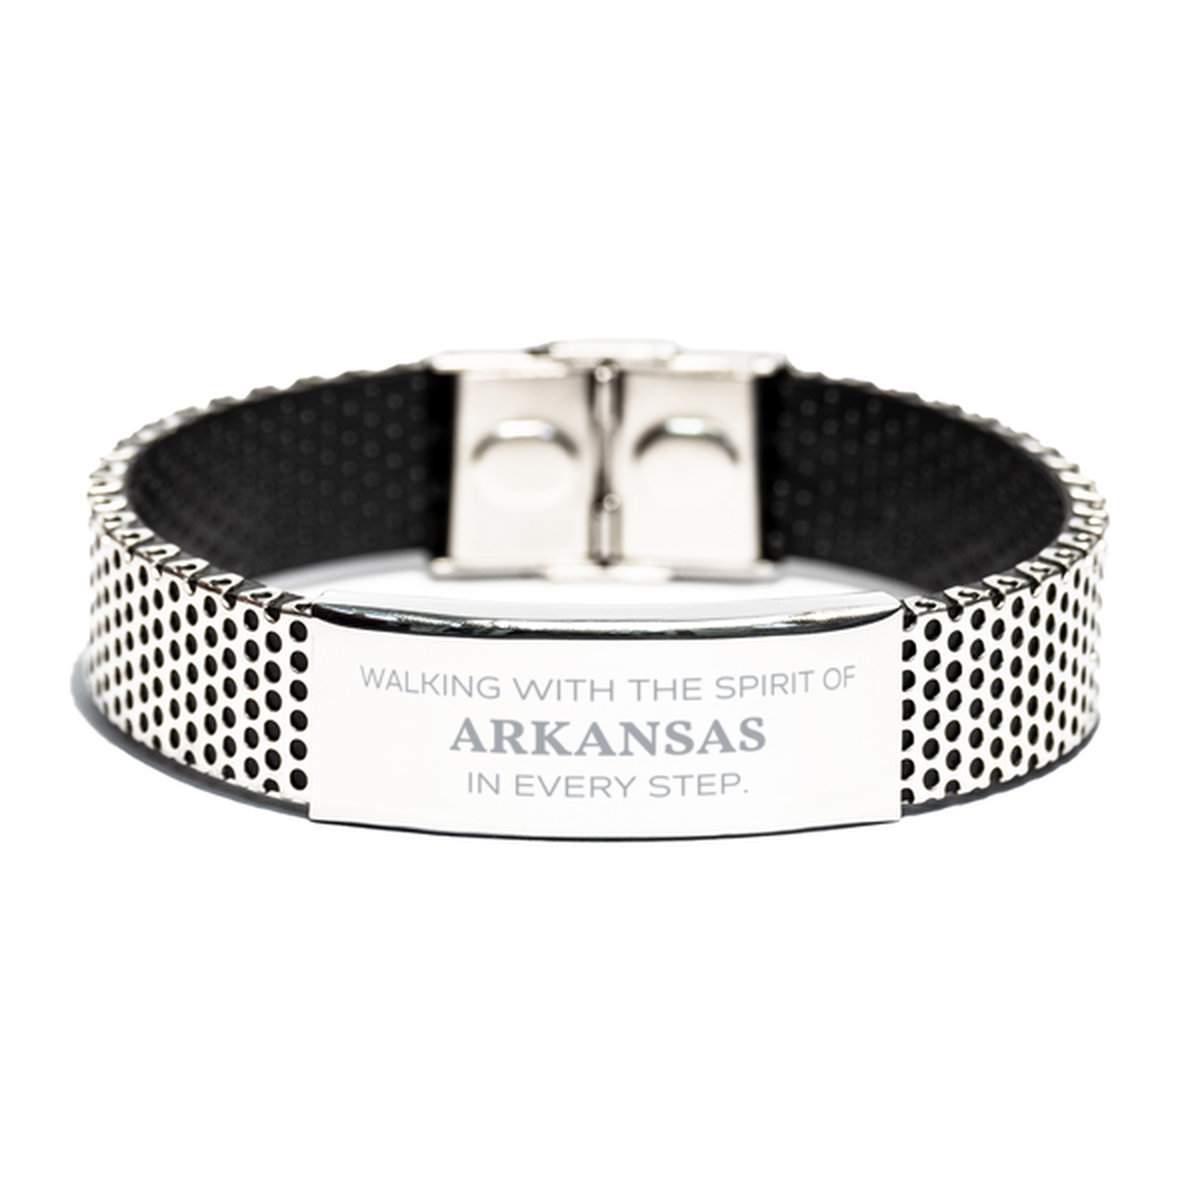 Arkansas Gifts, Walking with the spirit, Love Arkansas Birthday Christmas Stainless Steel Bracelet For Arkansas People, Men, Women, Friends